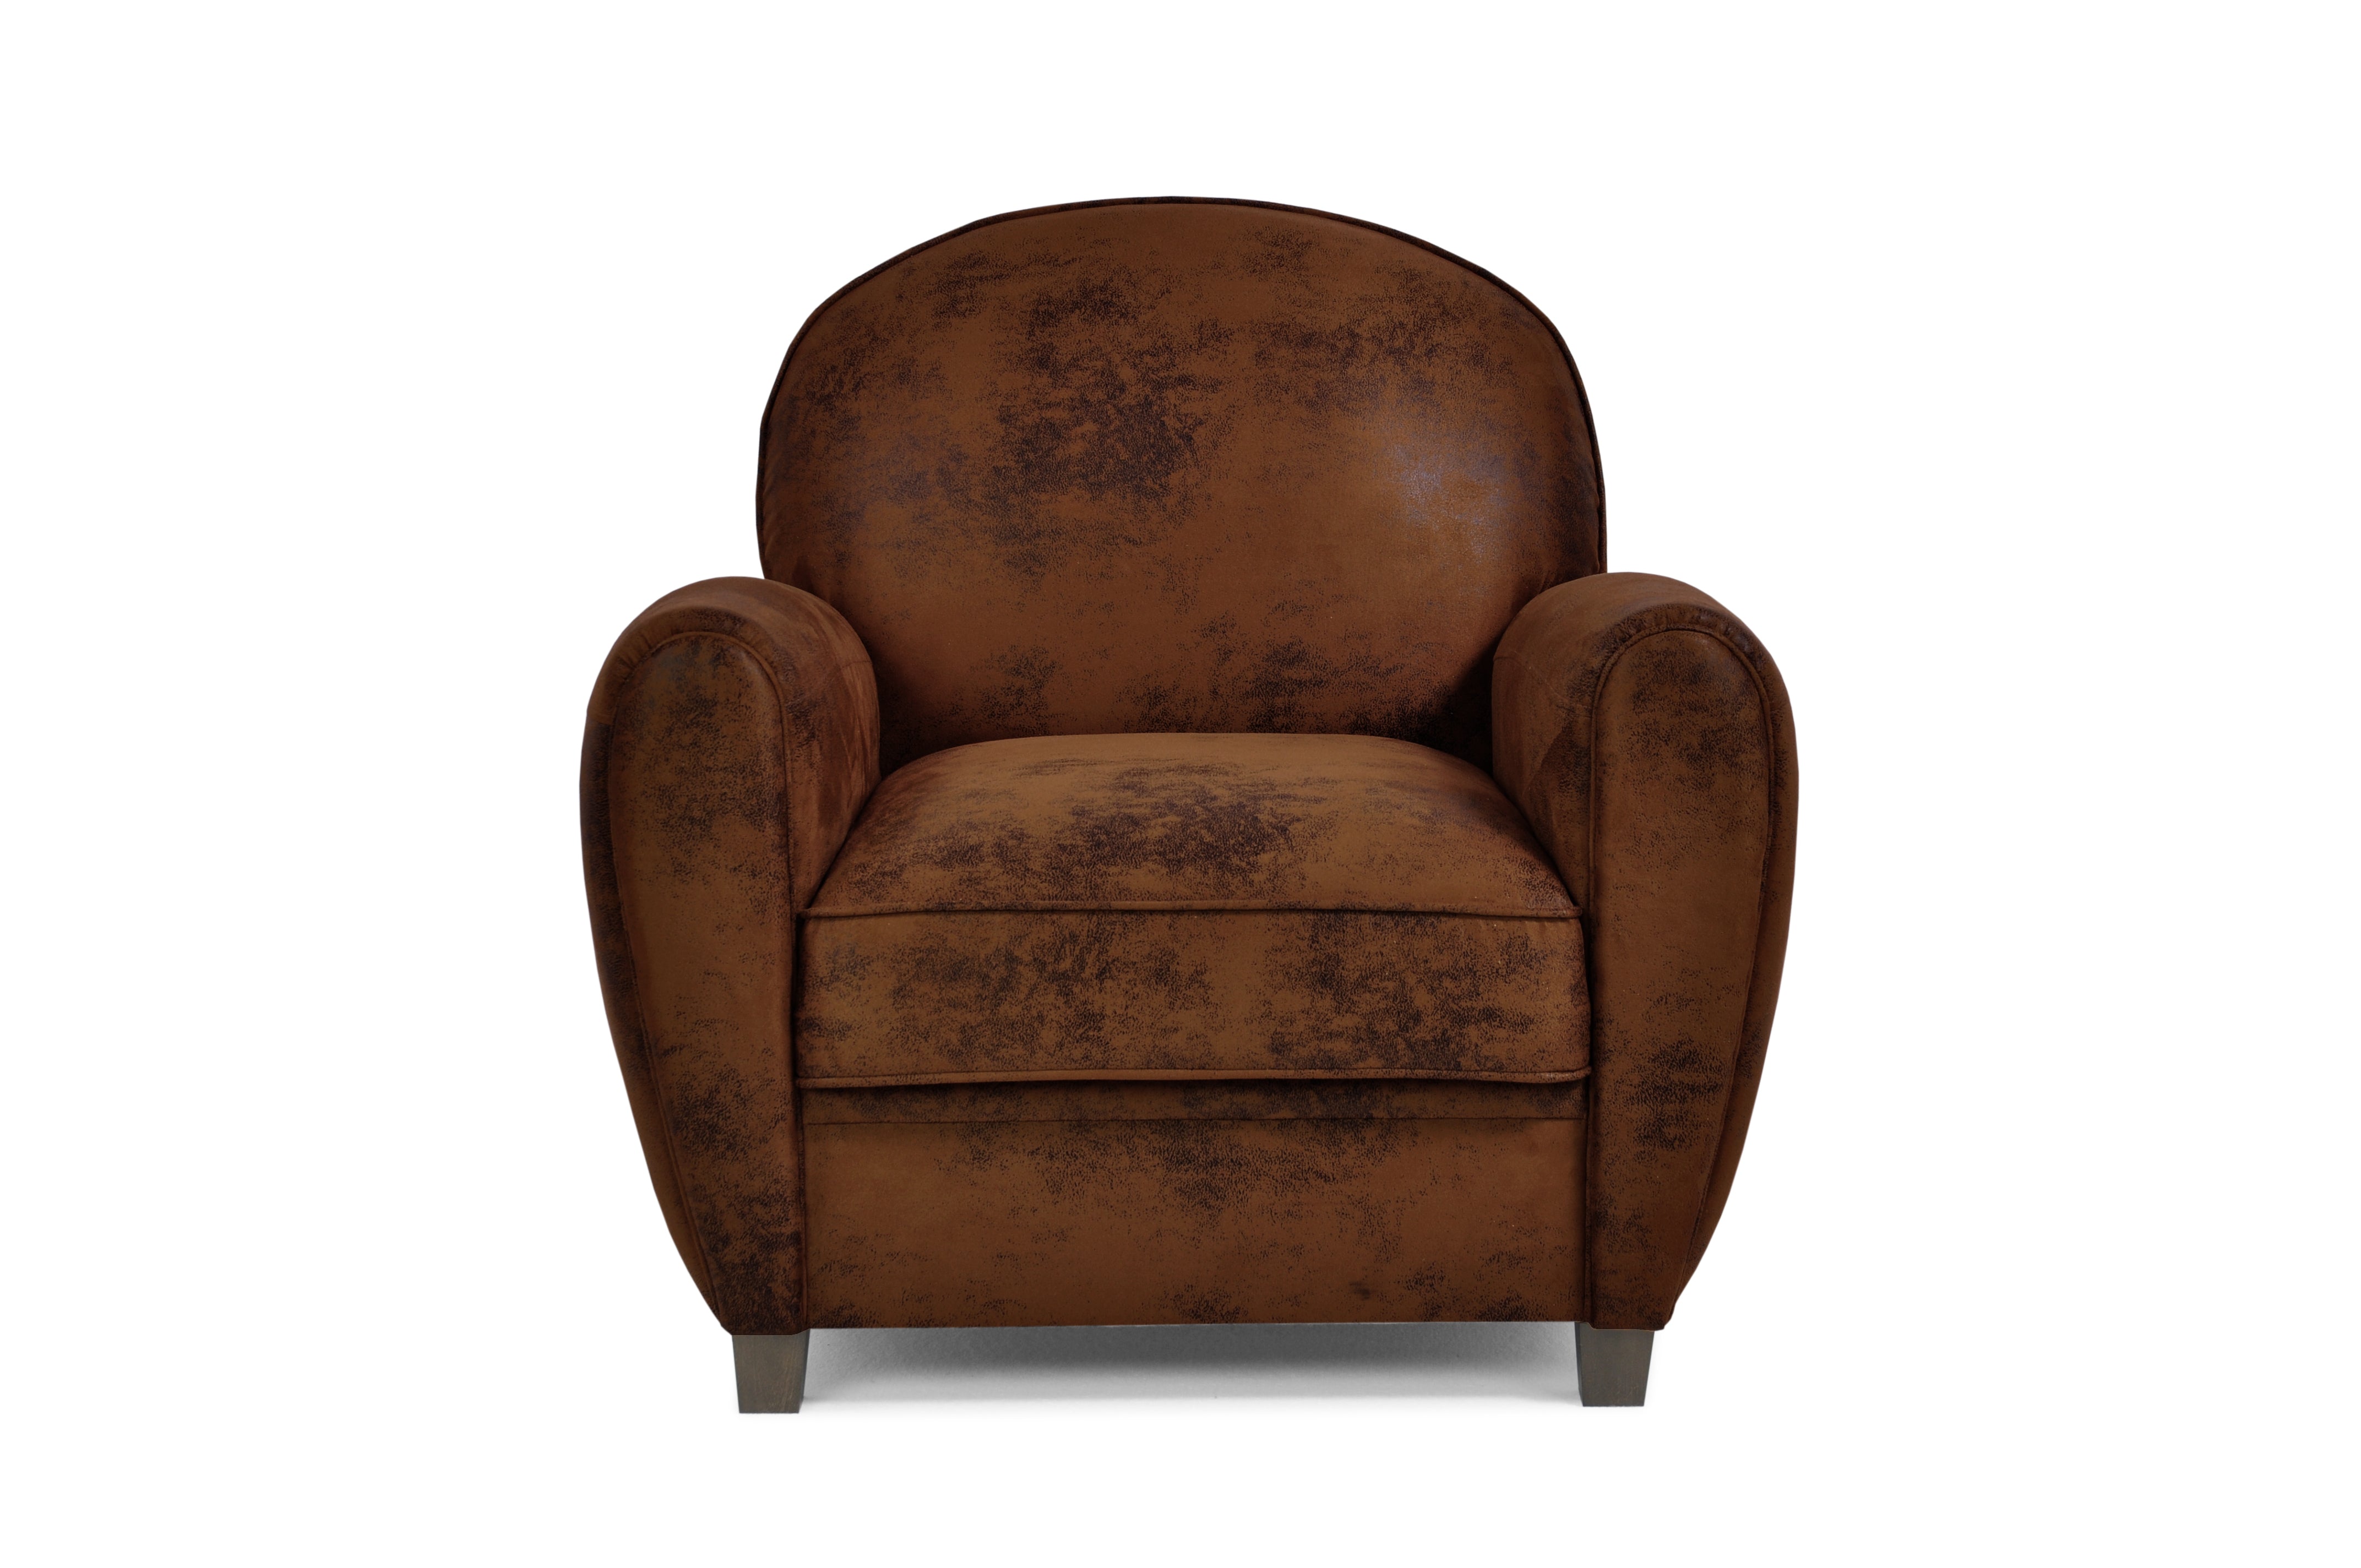 Fauteuil, chaise d'appoint rembourrée en tissu, siège salon moderne, avec pieds en bois, pour salon, salle à manger, chambre bureau - JORDI SINGLE